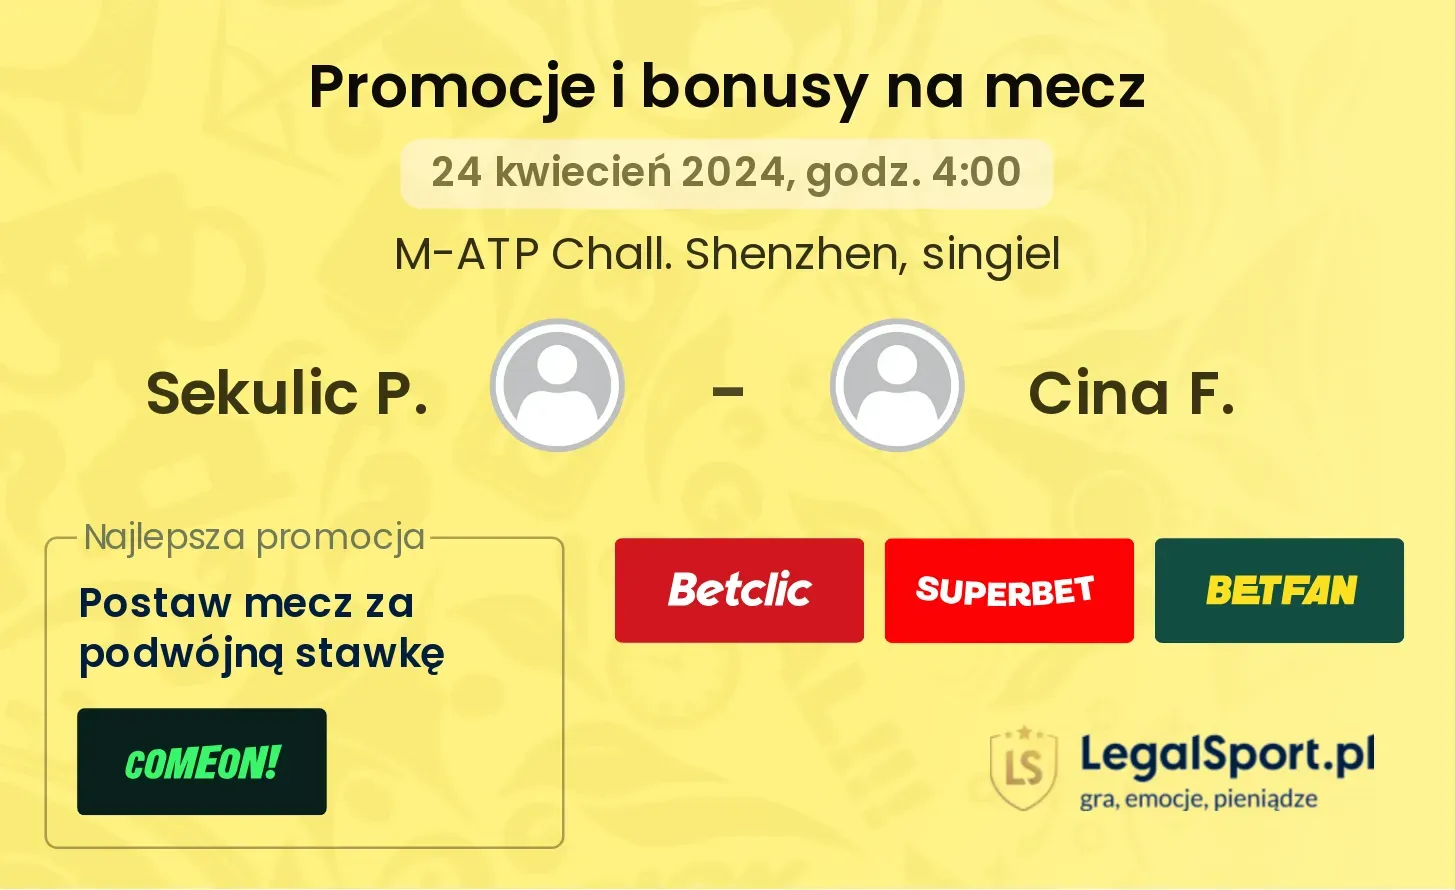 Sekulic P. - Cina F. promocje bonusy na mecz